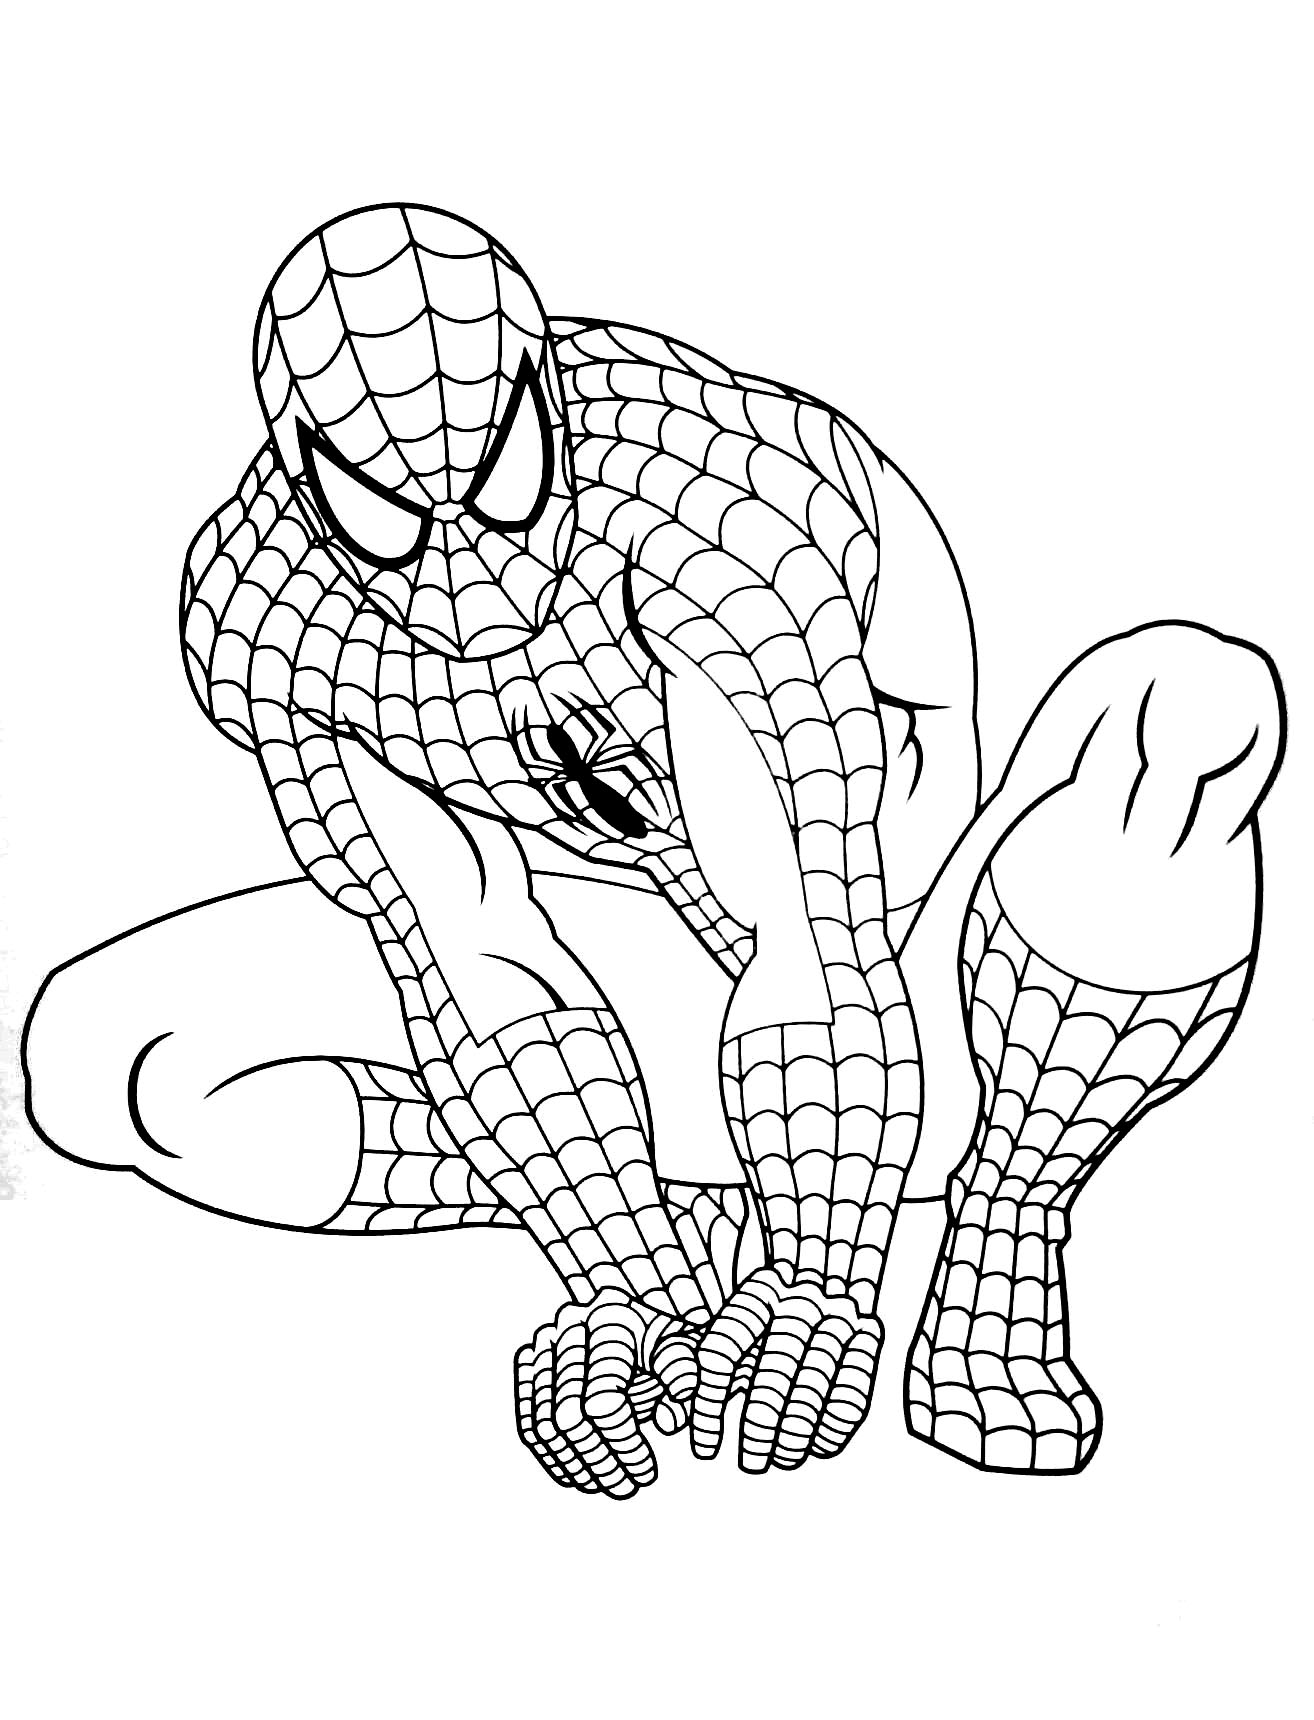 Incroyable coloriage de Spiderman pour enfants